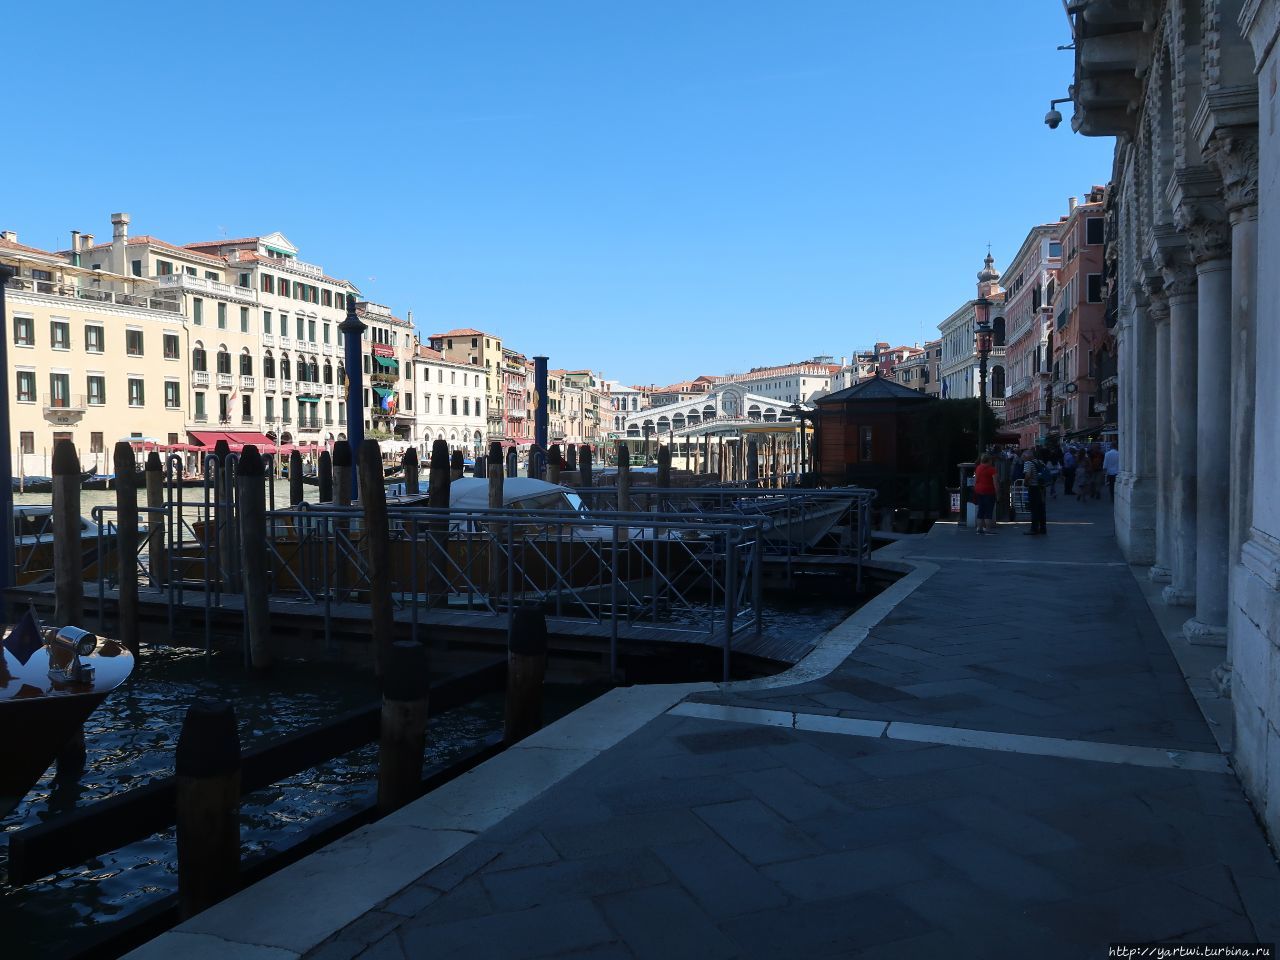 Набережная Гранд-канала. Вдали видно мост Риальто — один из четырёх мостов через Гранд-канал в Венеции, располагается в квартале Риальто. Самый первый и самый древний мост через канал. Самый известный мост Венеции и один из символов города.Отсюда мы поворачиваем обратно к площади Сан-Марко. Венеция, Италия